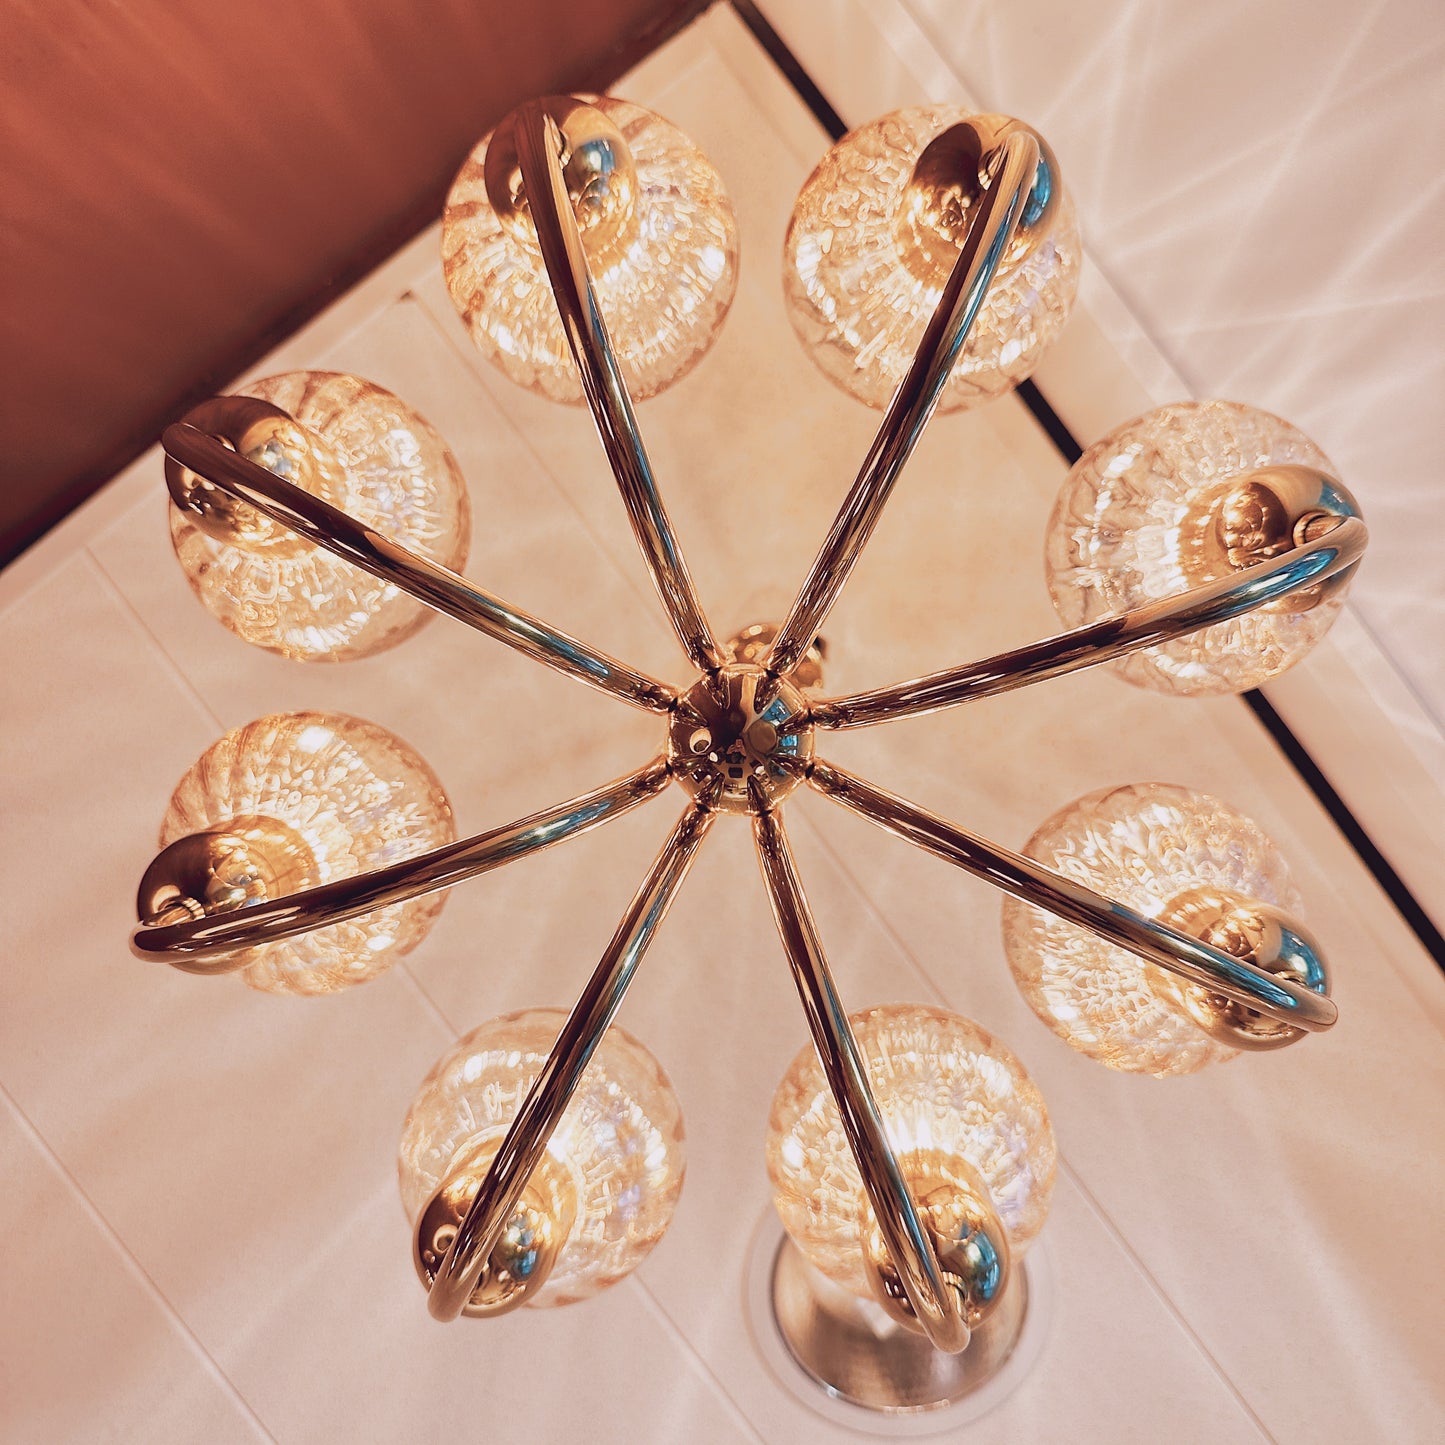 Kaiser Leuchten chandelier with amber globes